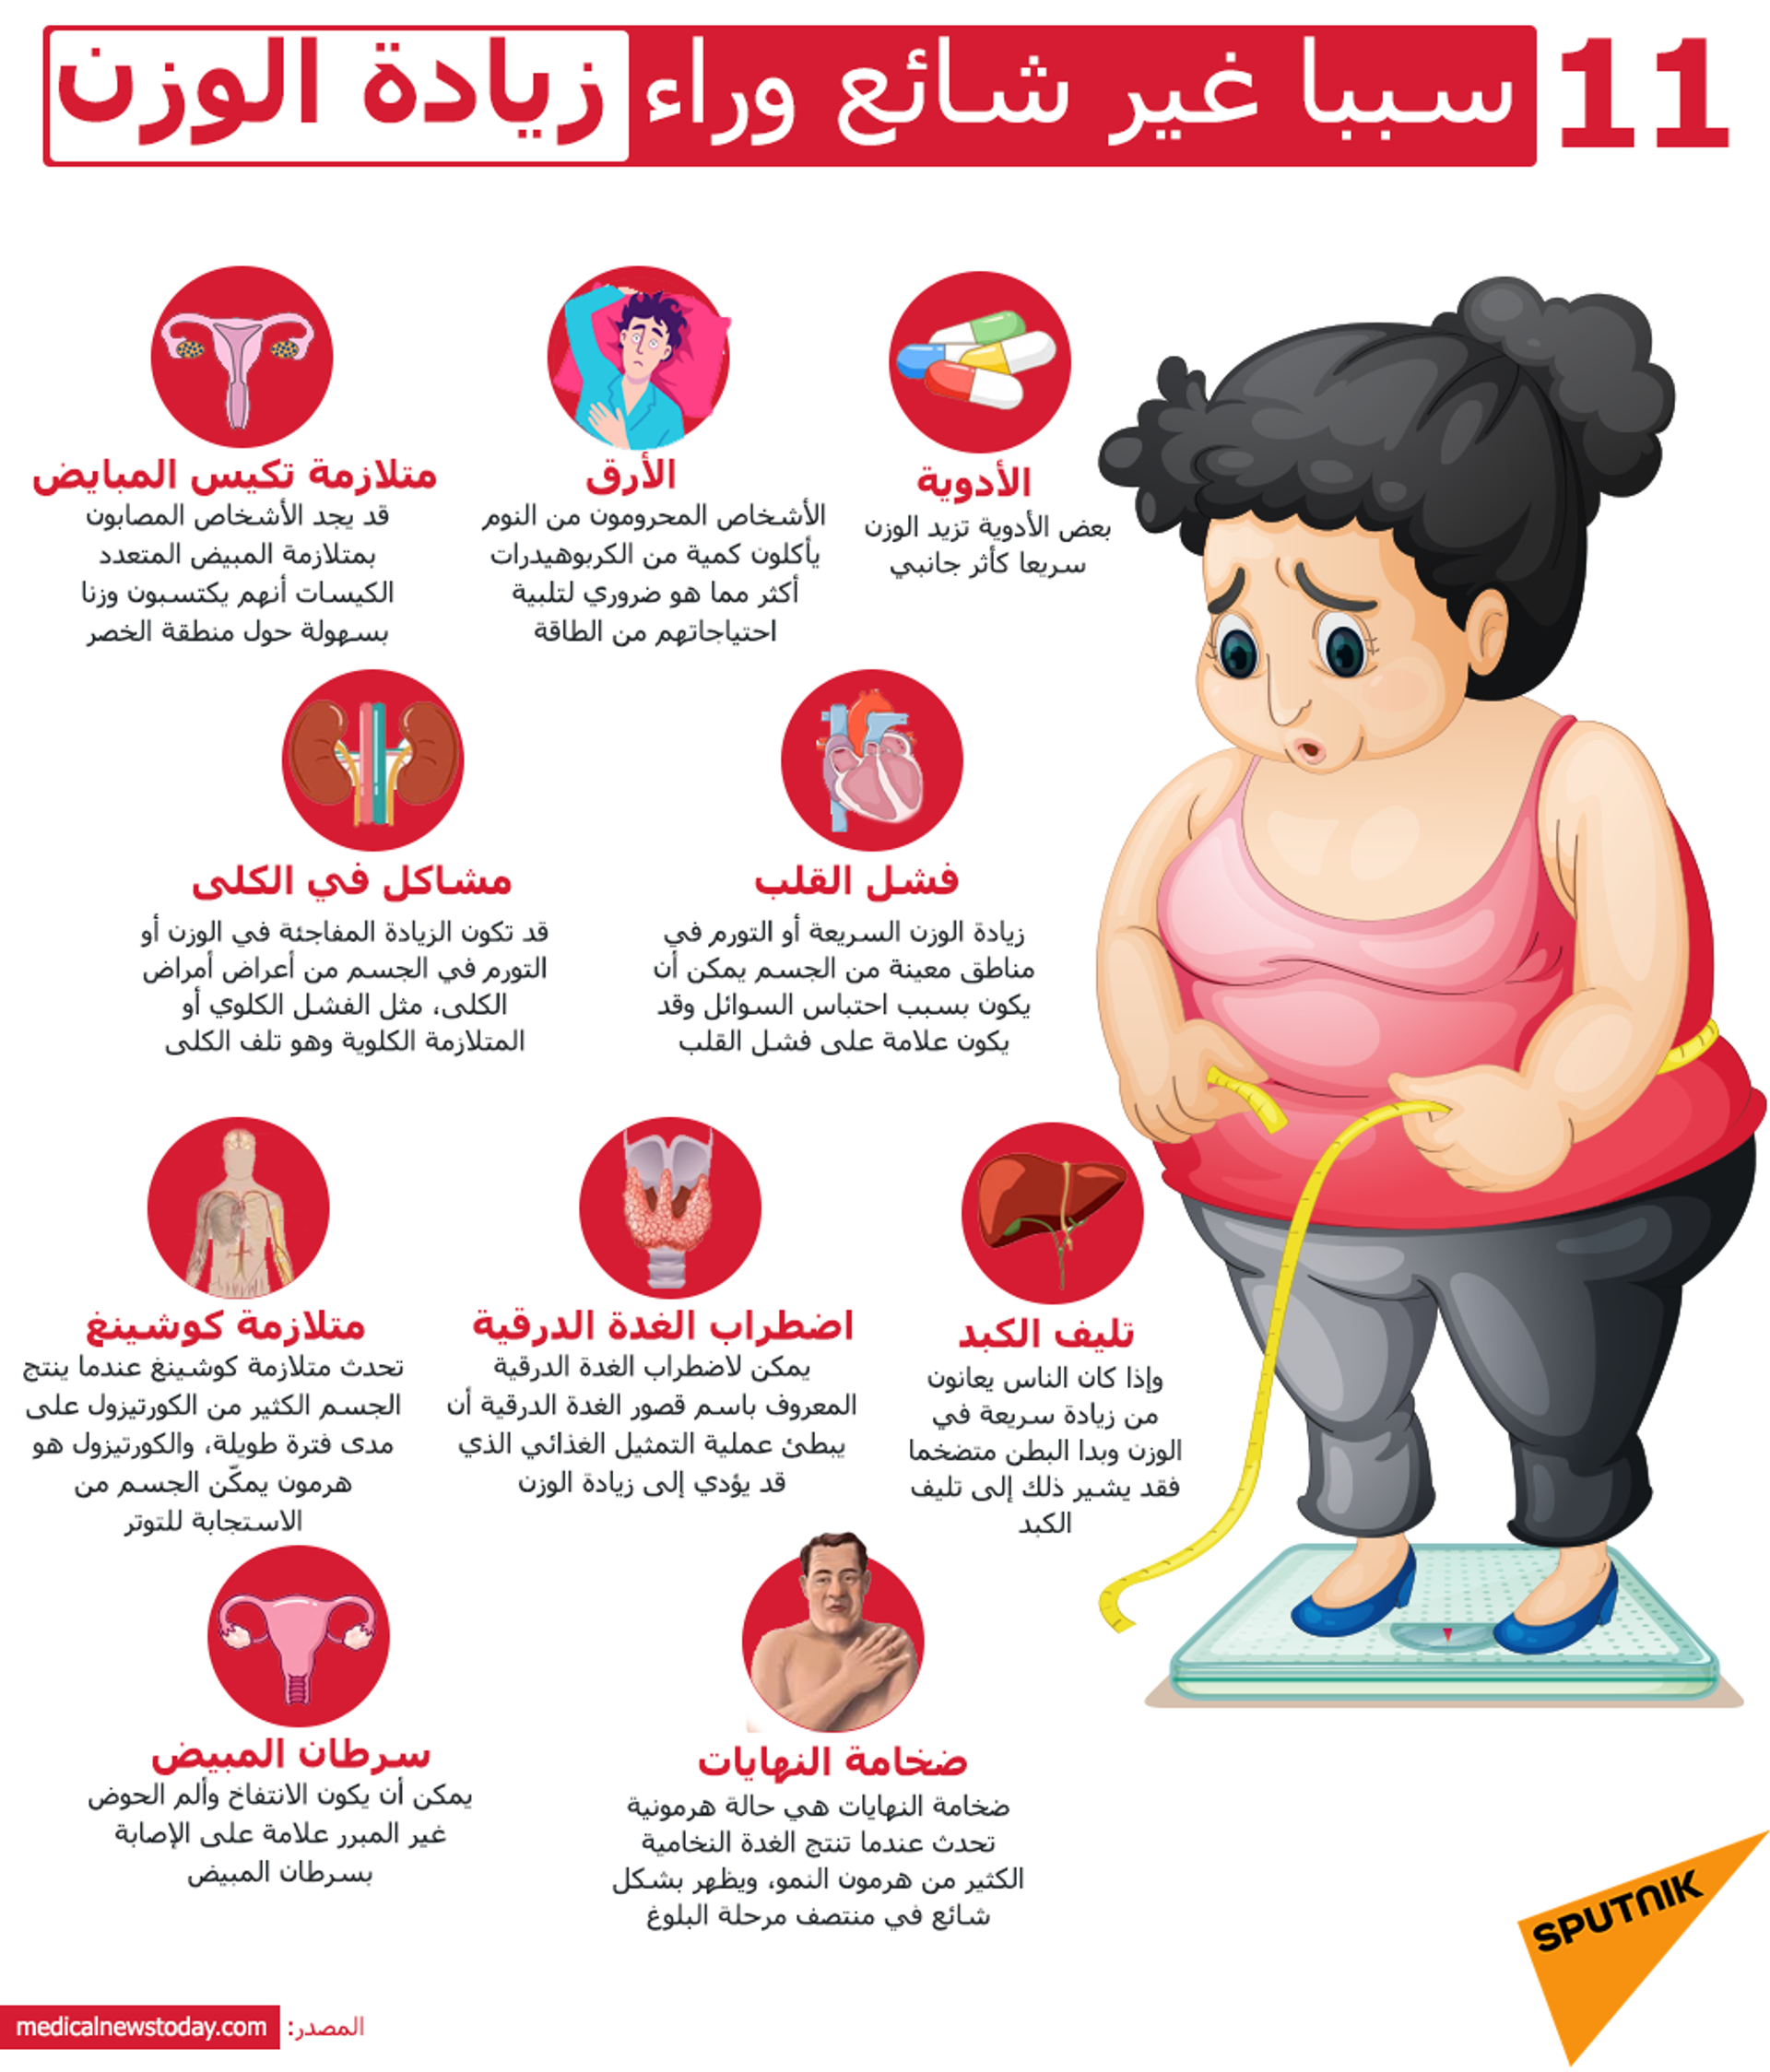 بعكس التوقعات... طبيبة مختصة تحدد 5 أسباب لزيادة الوزن غير المبررة  - سبوتنيك عربي, 1920, 15.02.2021